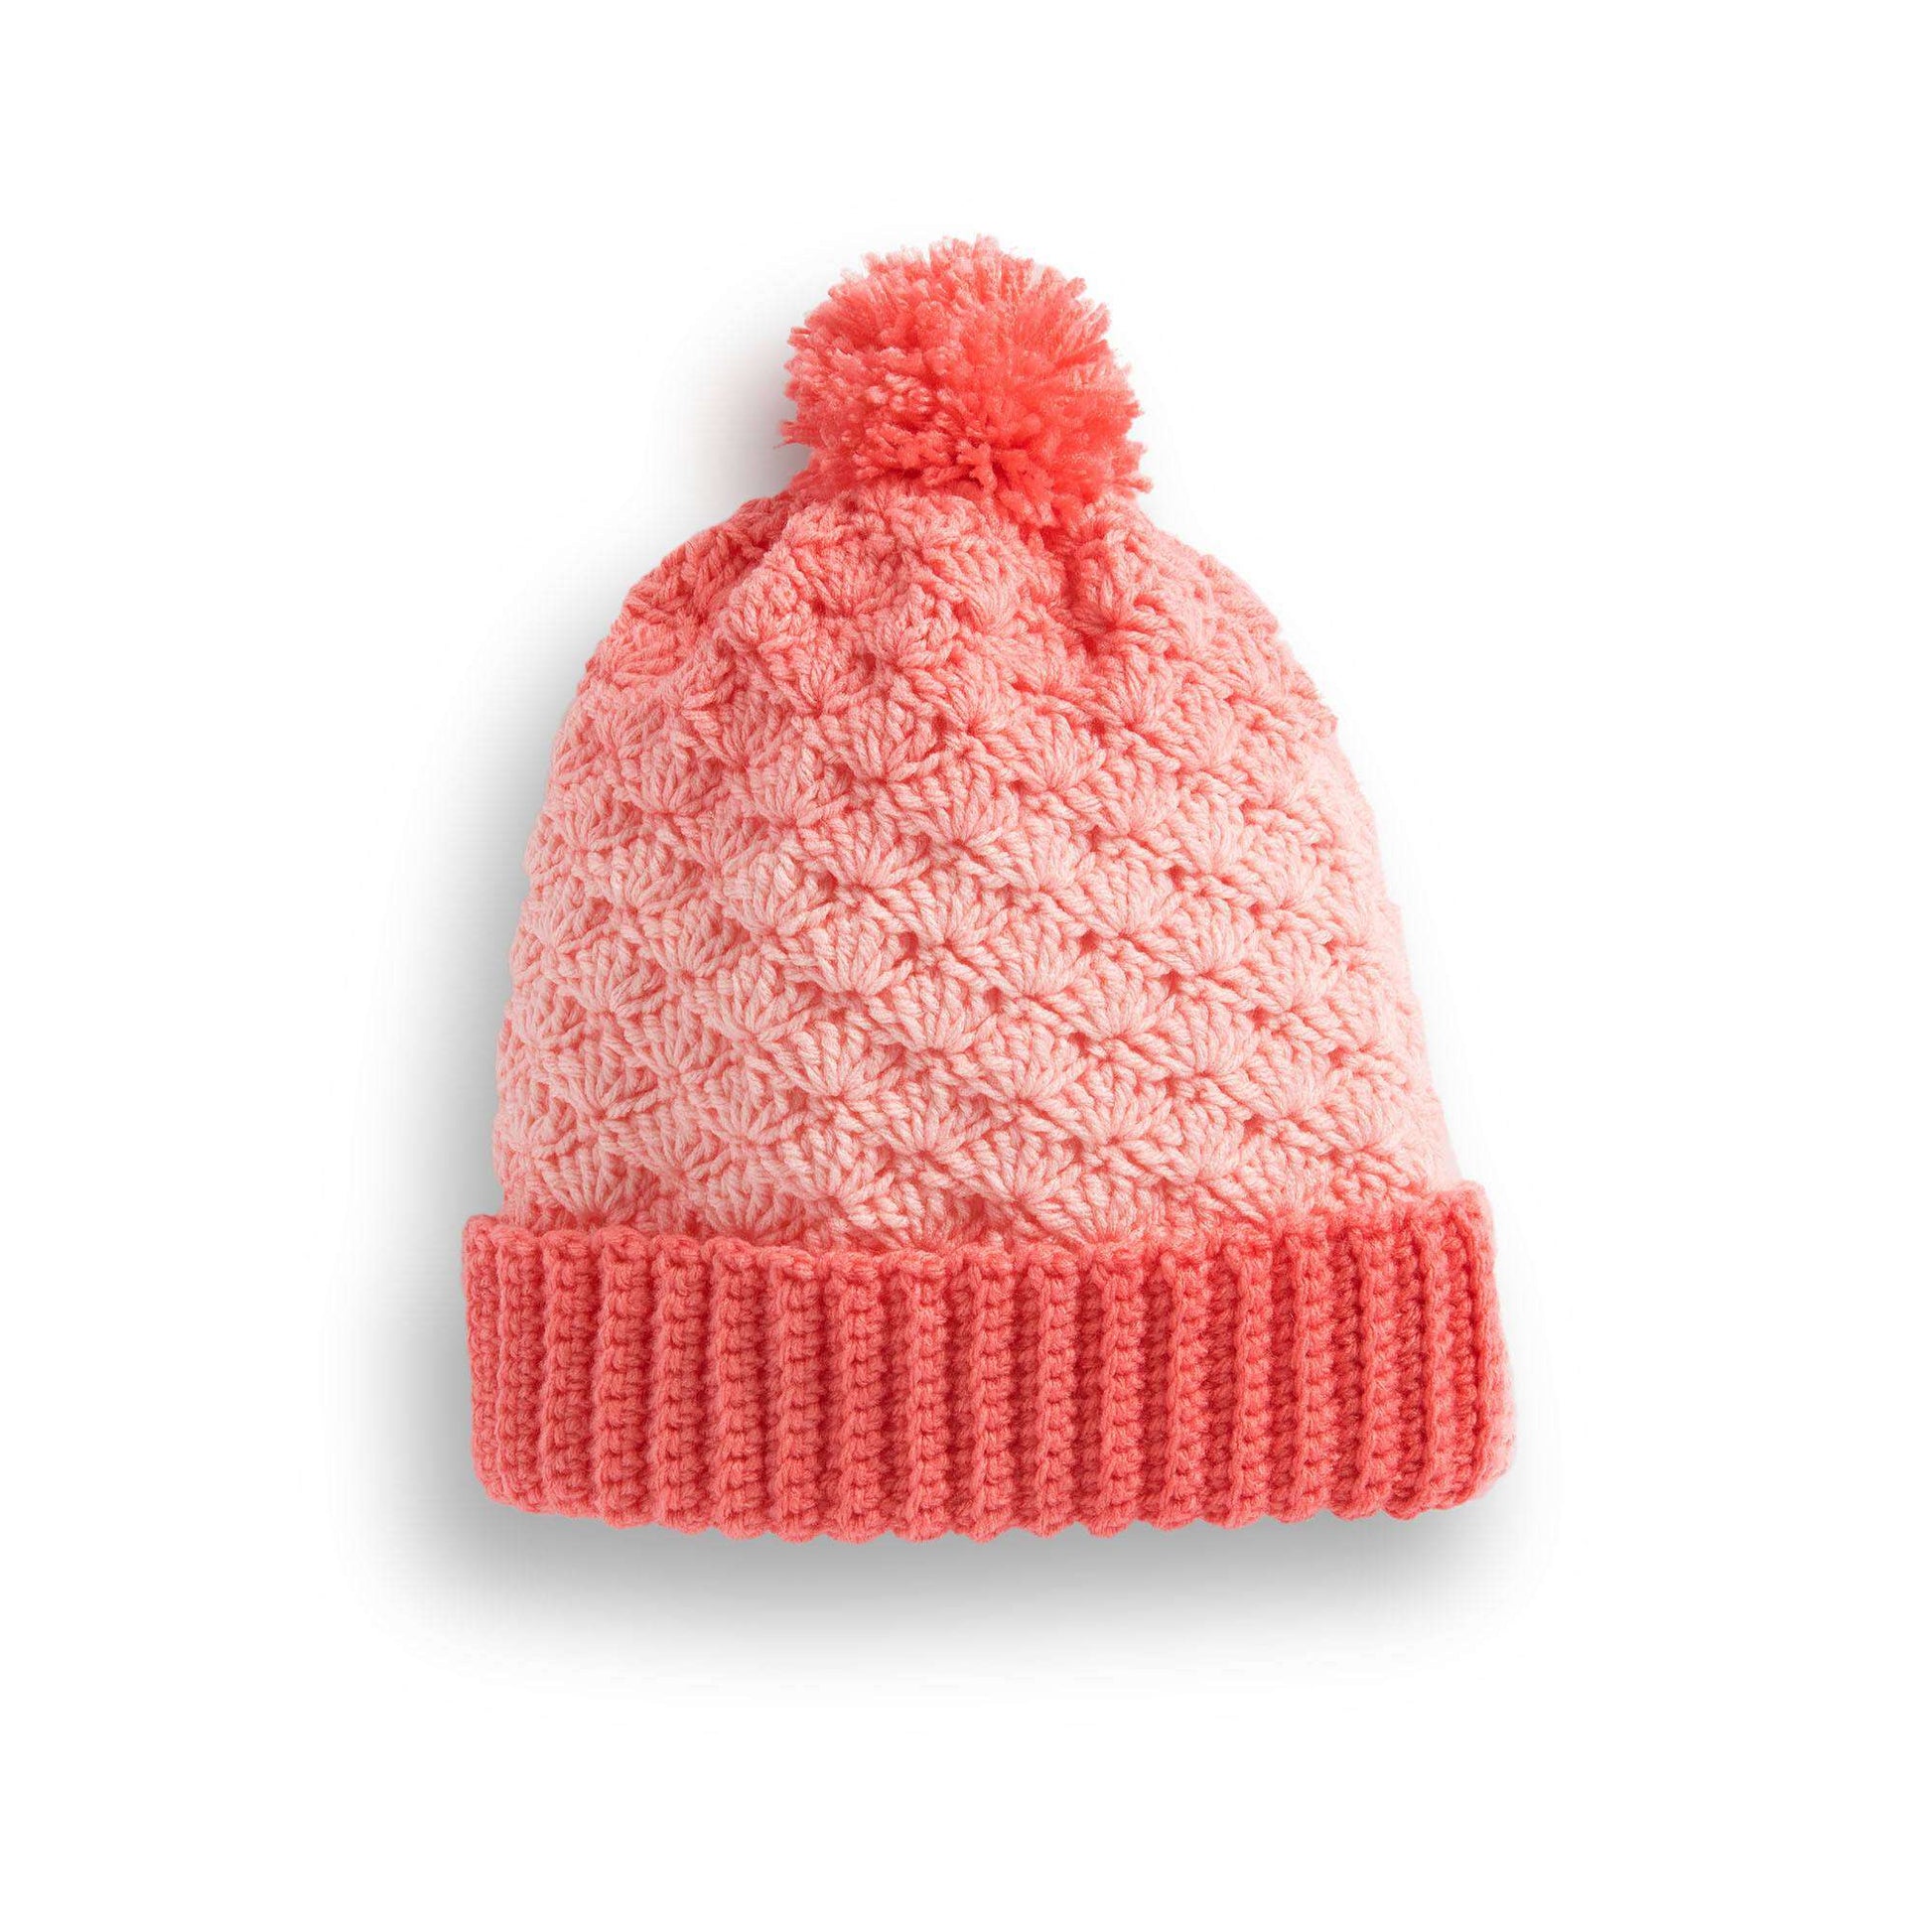 Free Red Heart Crochet Shell Stitch Basic Hat Pattern